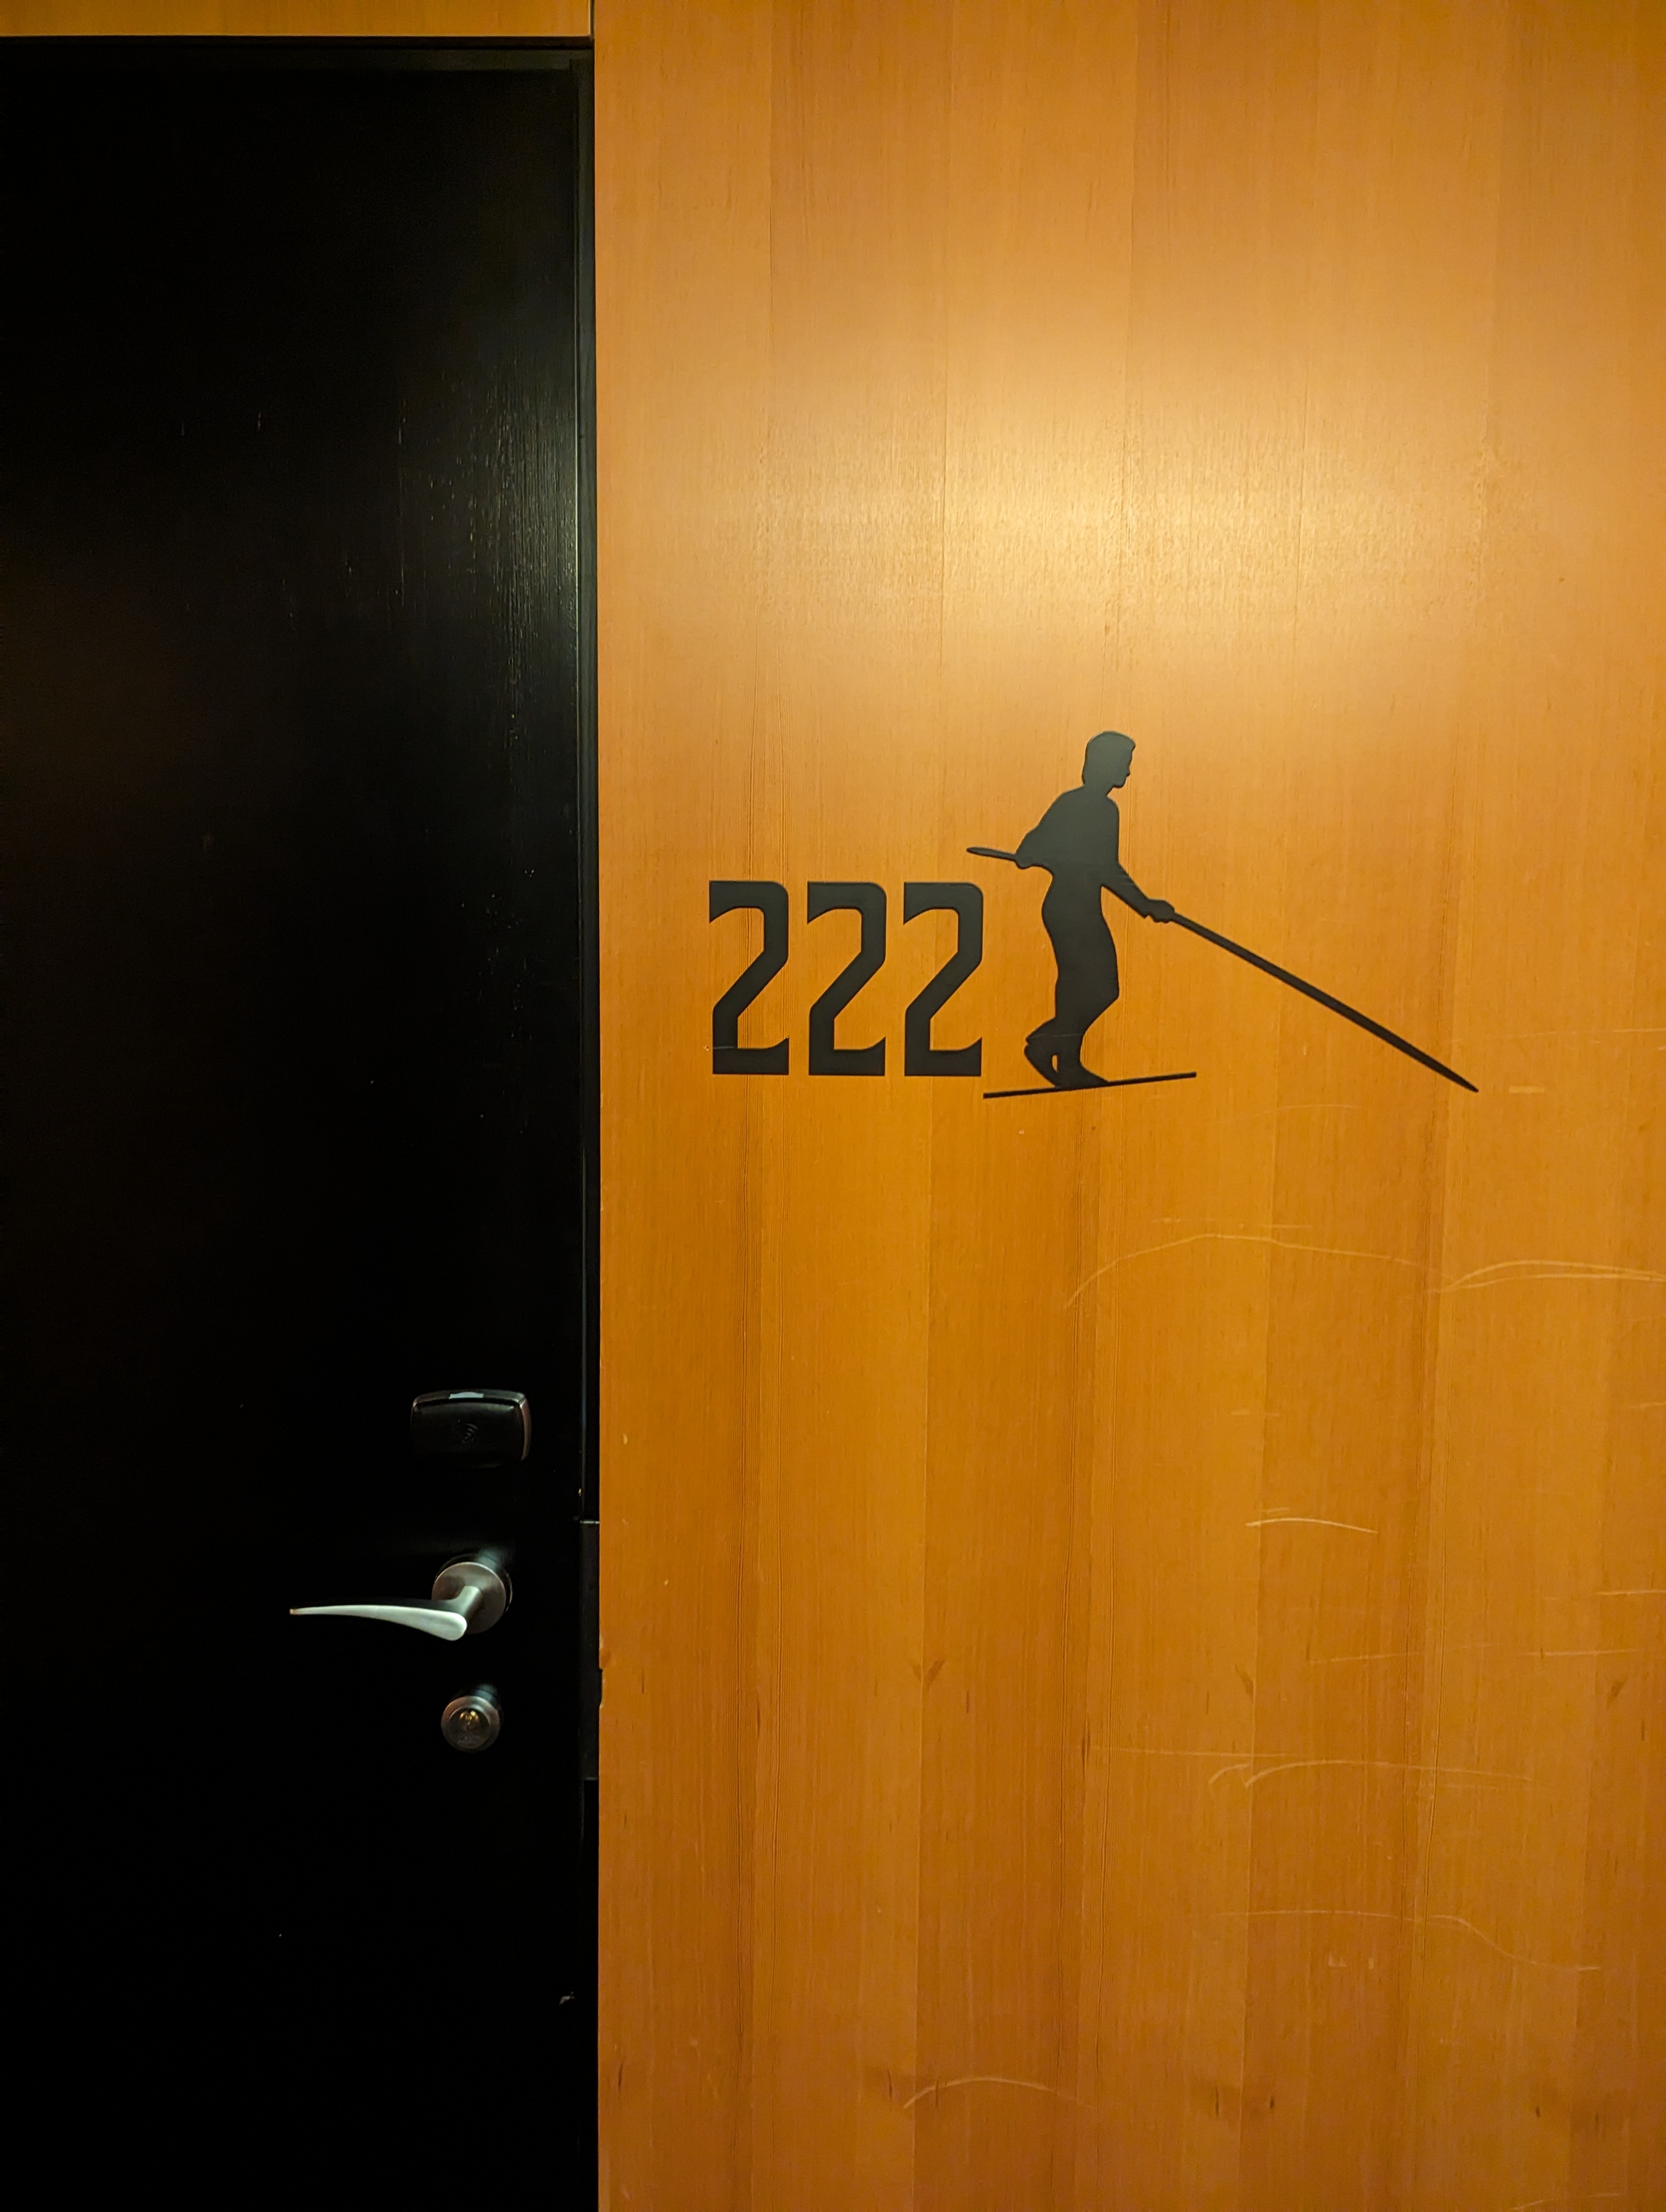 Hotel room door 222 with a tightrope walker